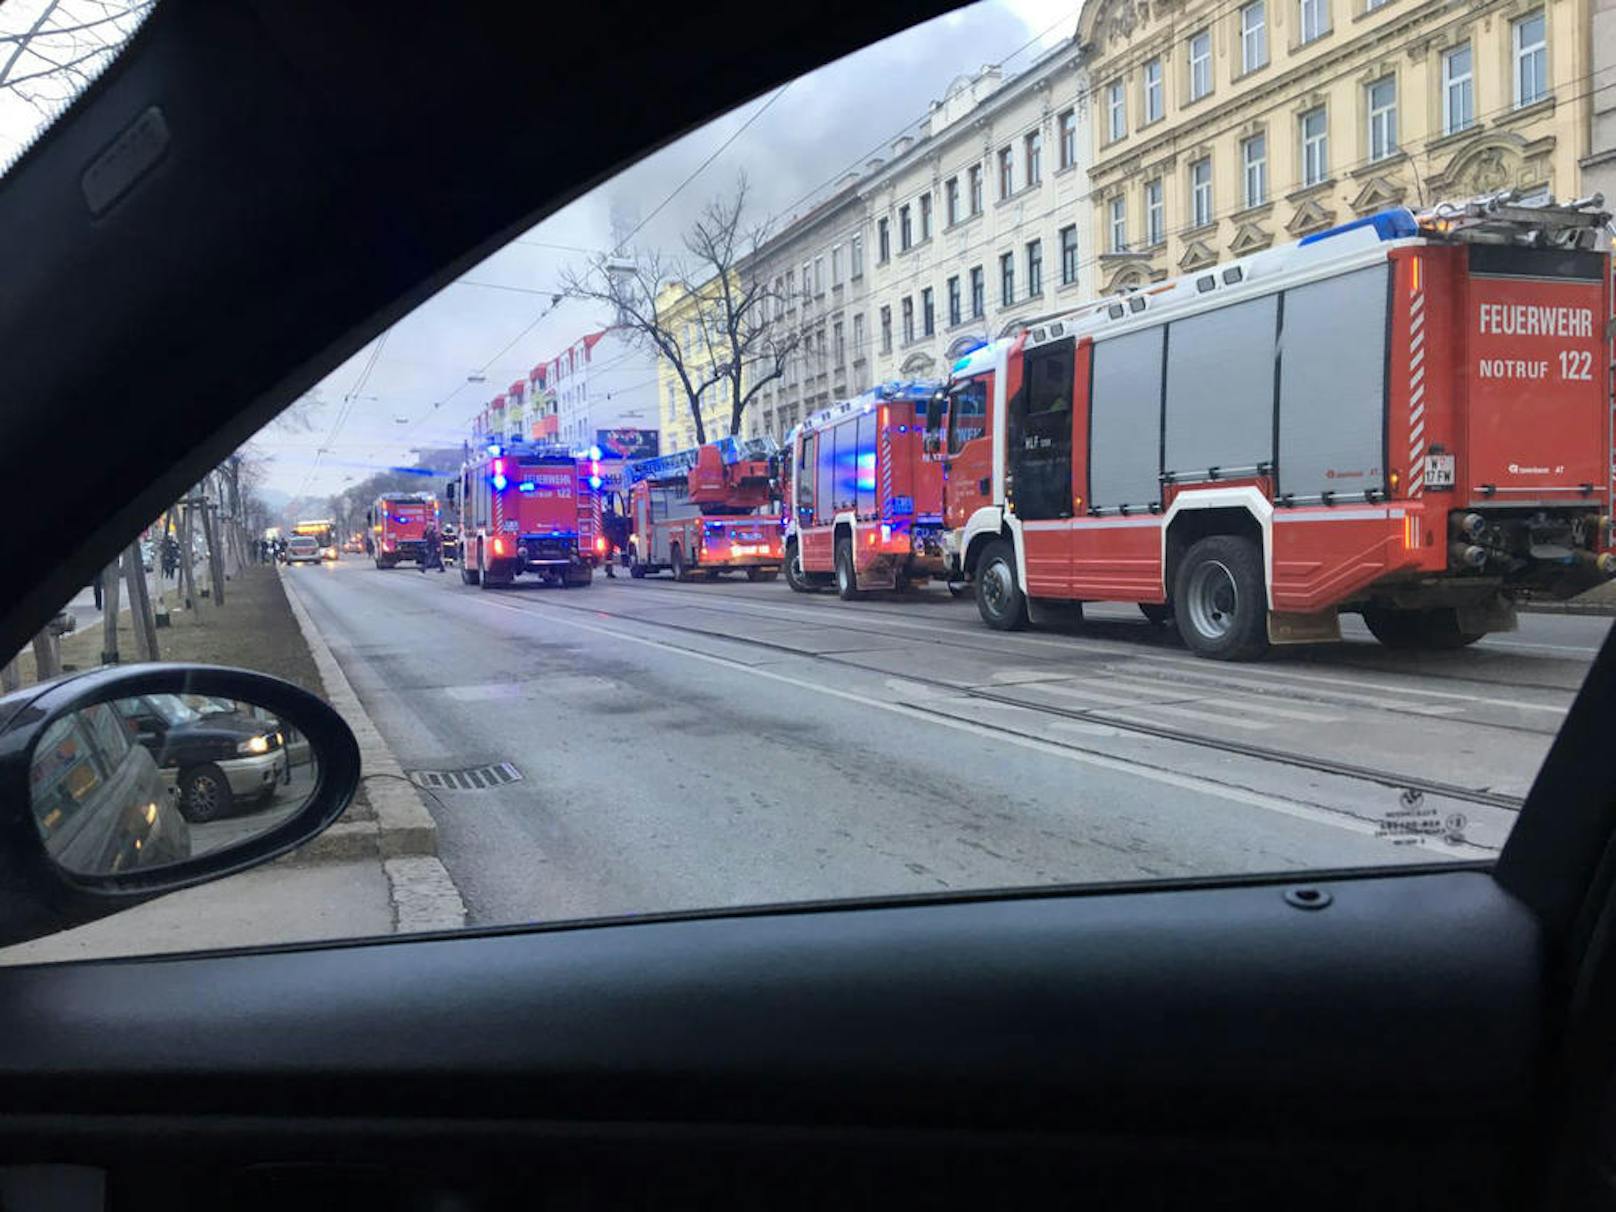 25 Einsatzfahrzeuge der Feuerwehr waren vor Ort